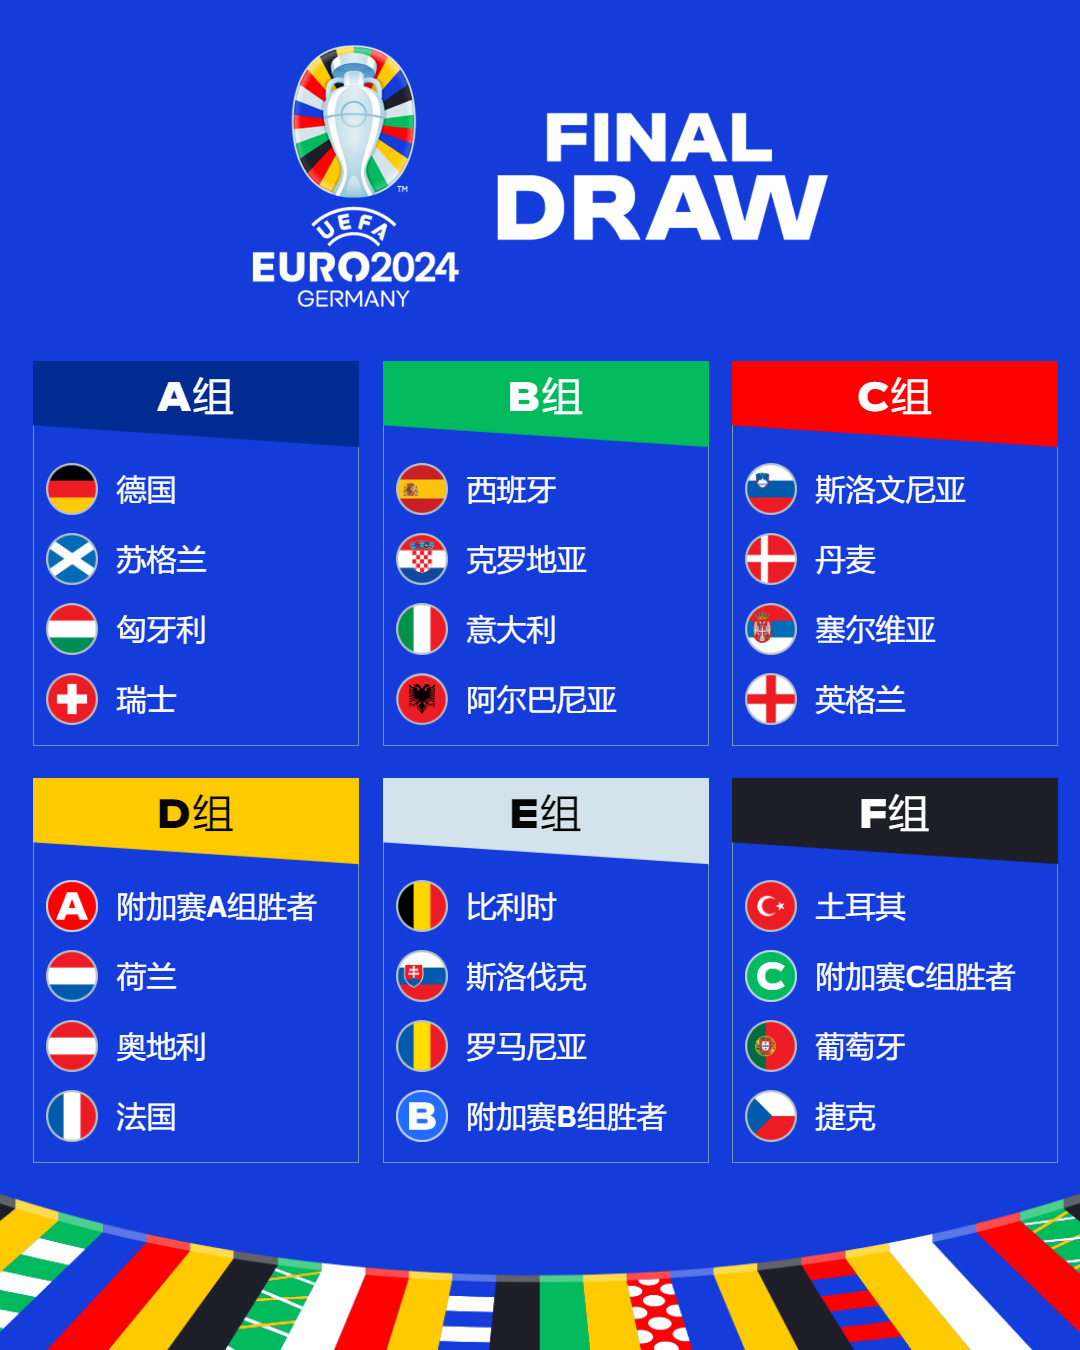 欧洲杯走了,竞猜结果猜错的球迷不哭站起来撸-北京搜狐焦点